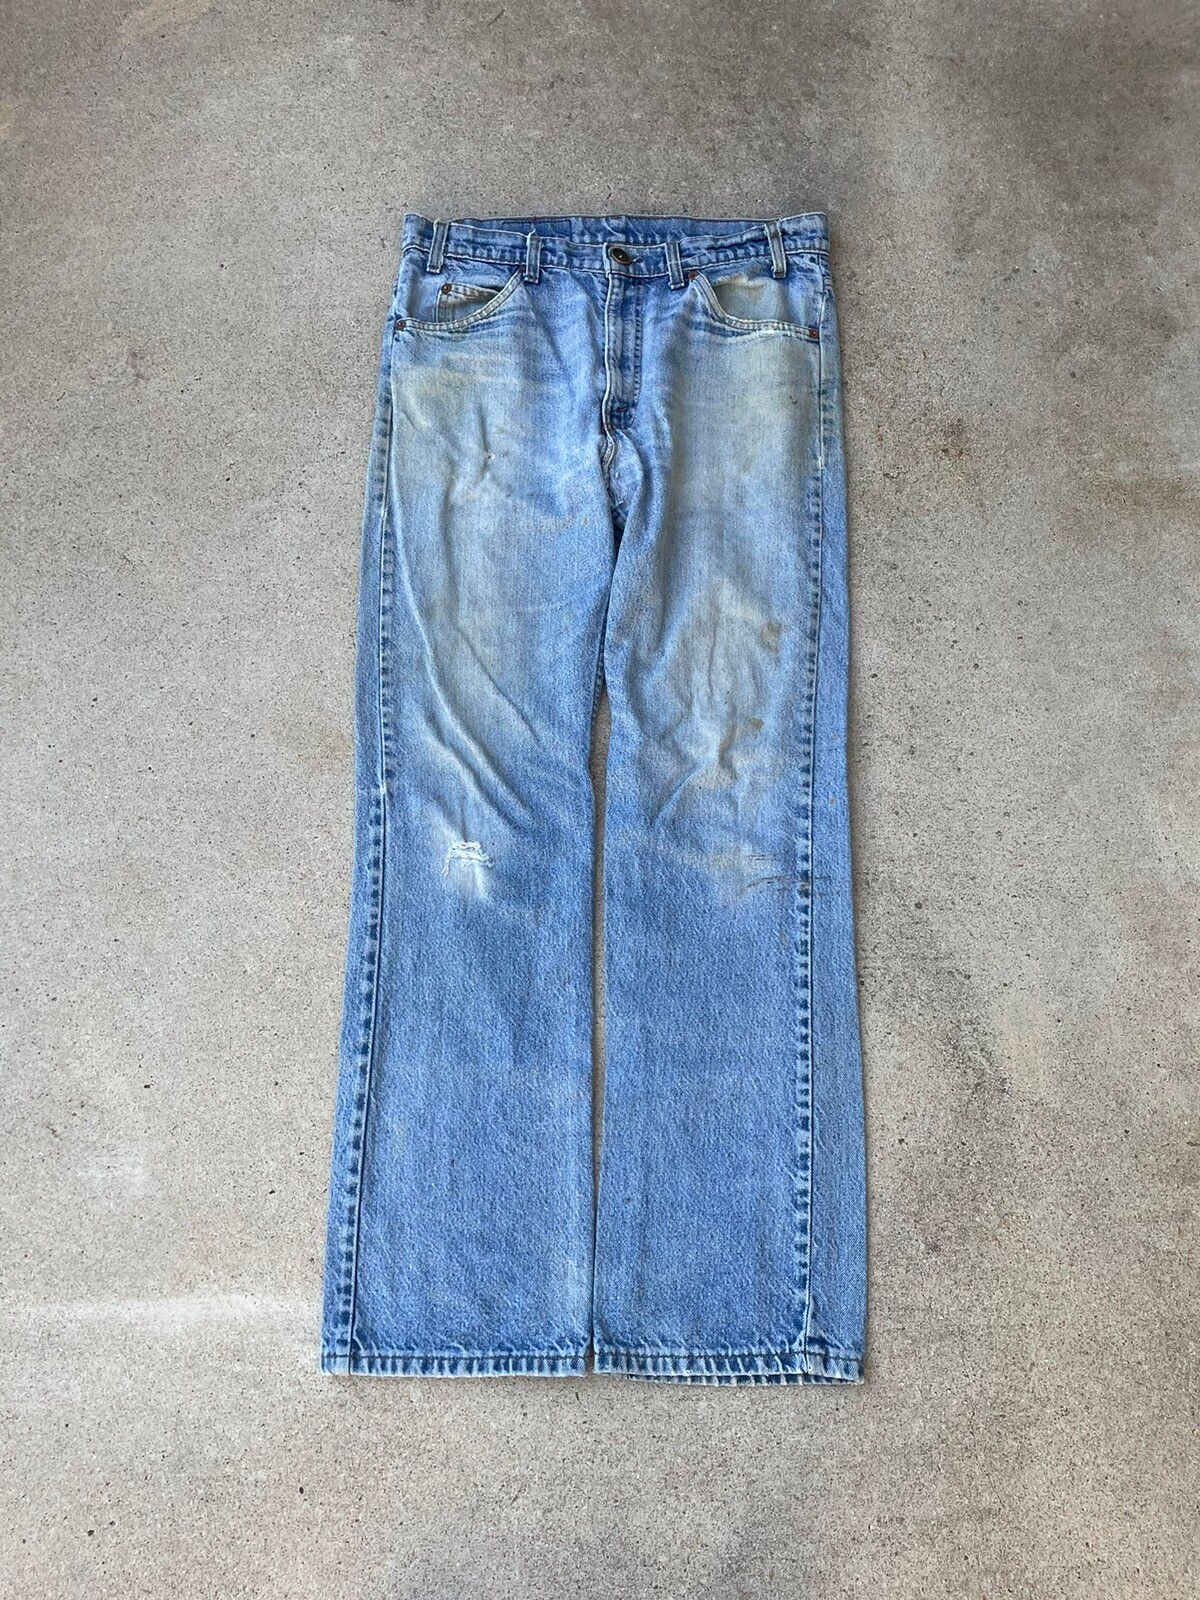 Vintage Vtg 80s Levis 517 Orange Tab Bootcut Distressed Jeans 34x31 Size US 32 / EU 48 - 1 Preview